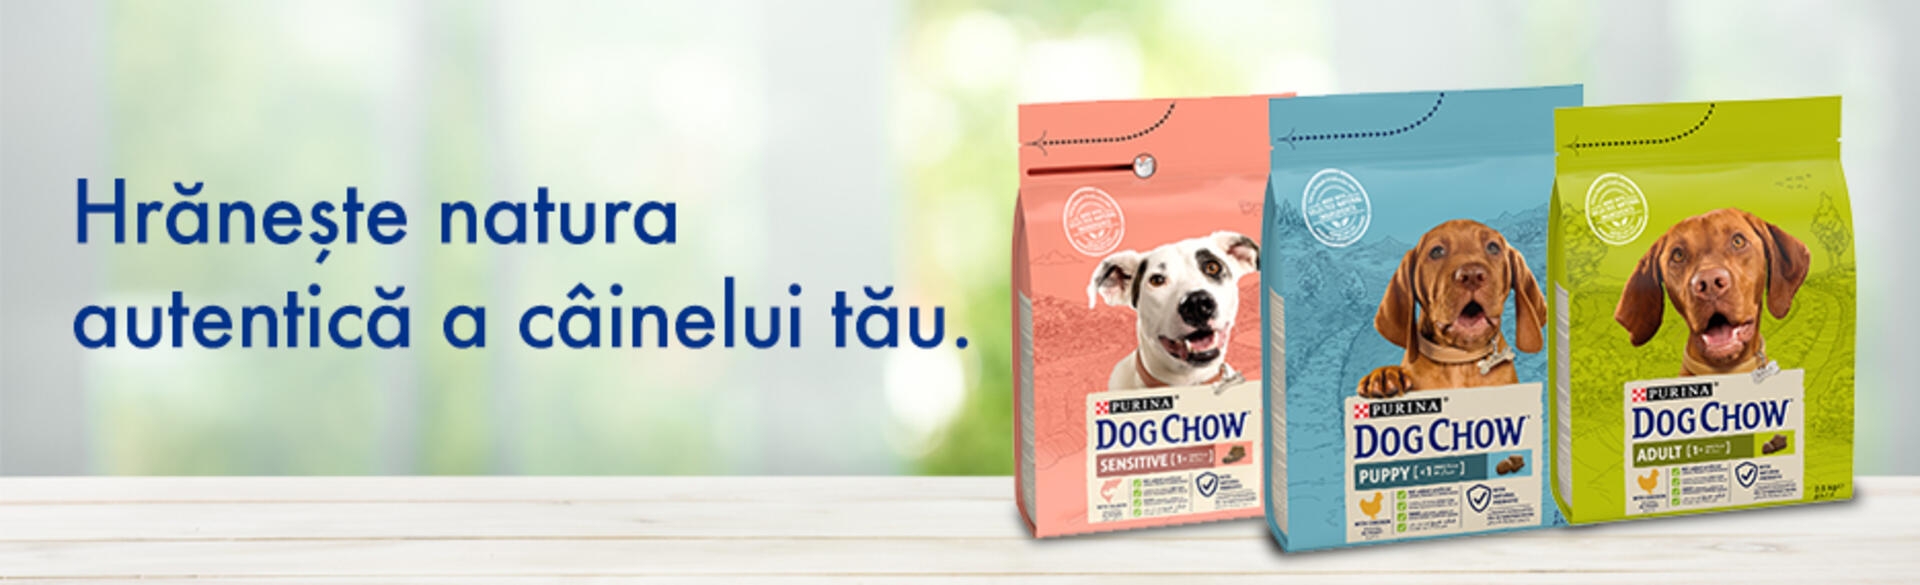 Dog Chow gama hrana caine banner